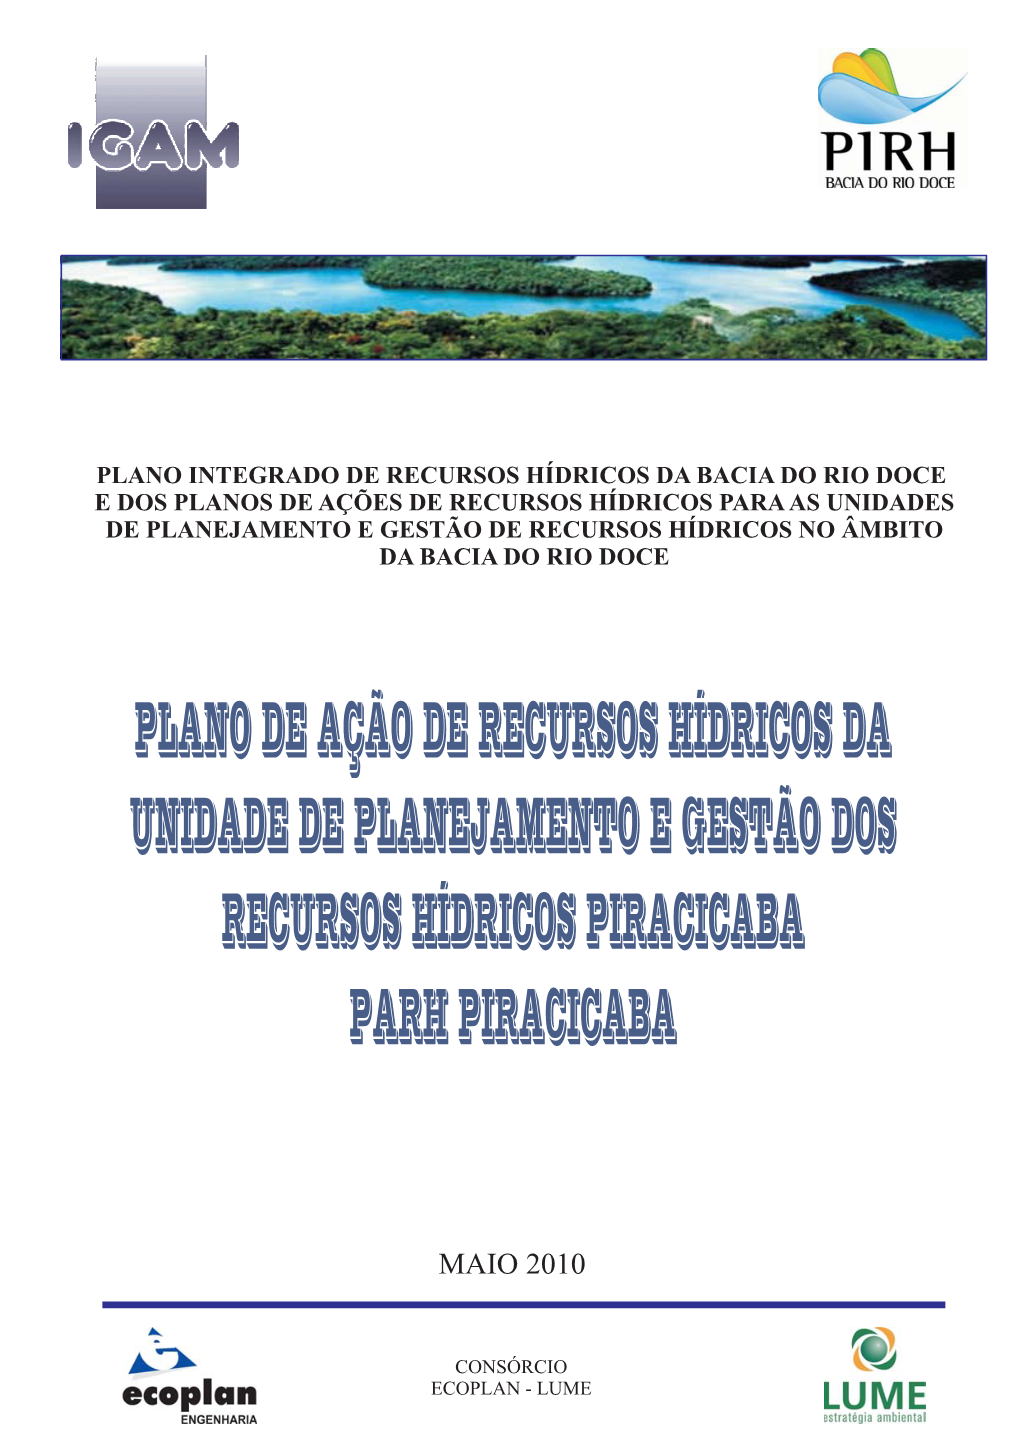 PARH Bacia Do Rio Piracicaba